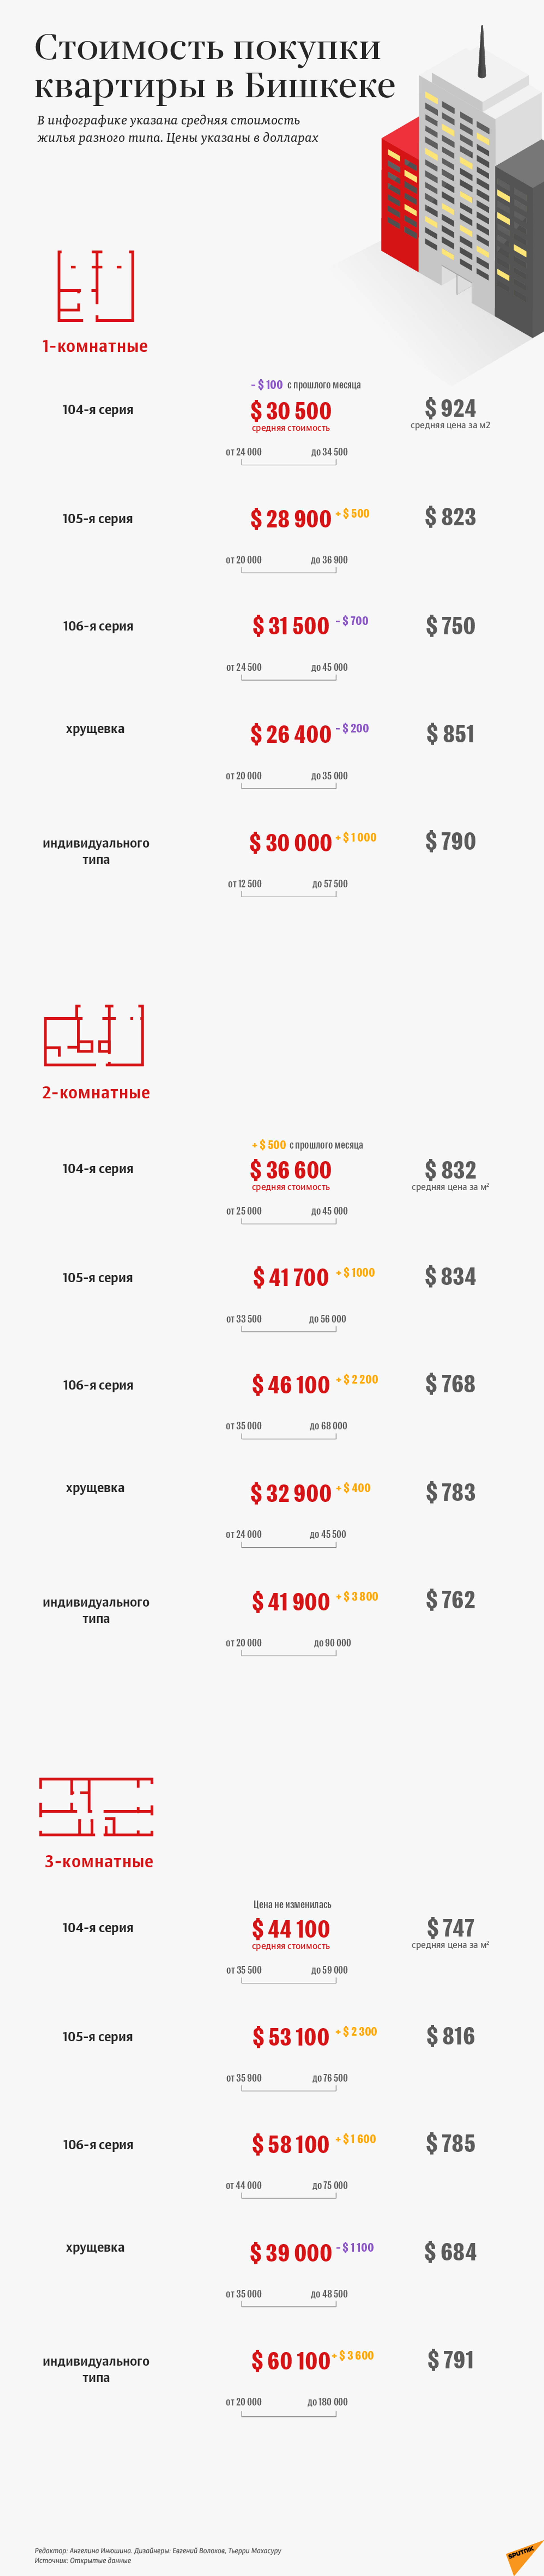 Цены на квартиры в Бишкеке в январе 2021 года - Sputnik Кыргызстан, 1920, 11.02.2021